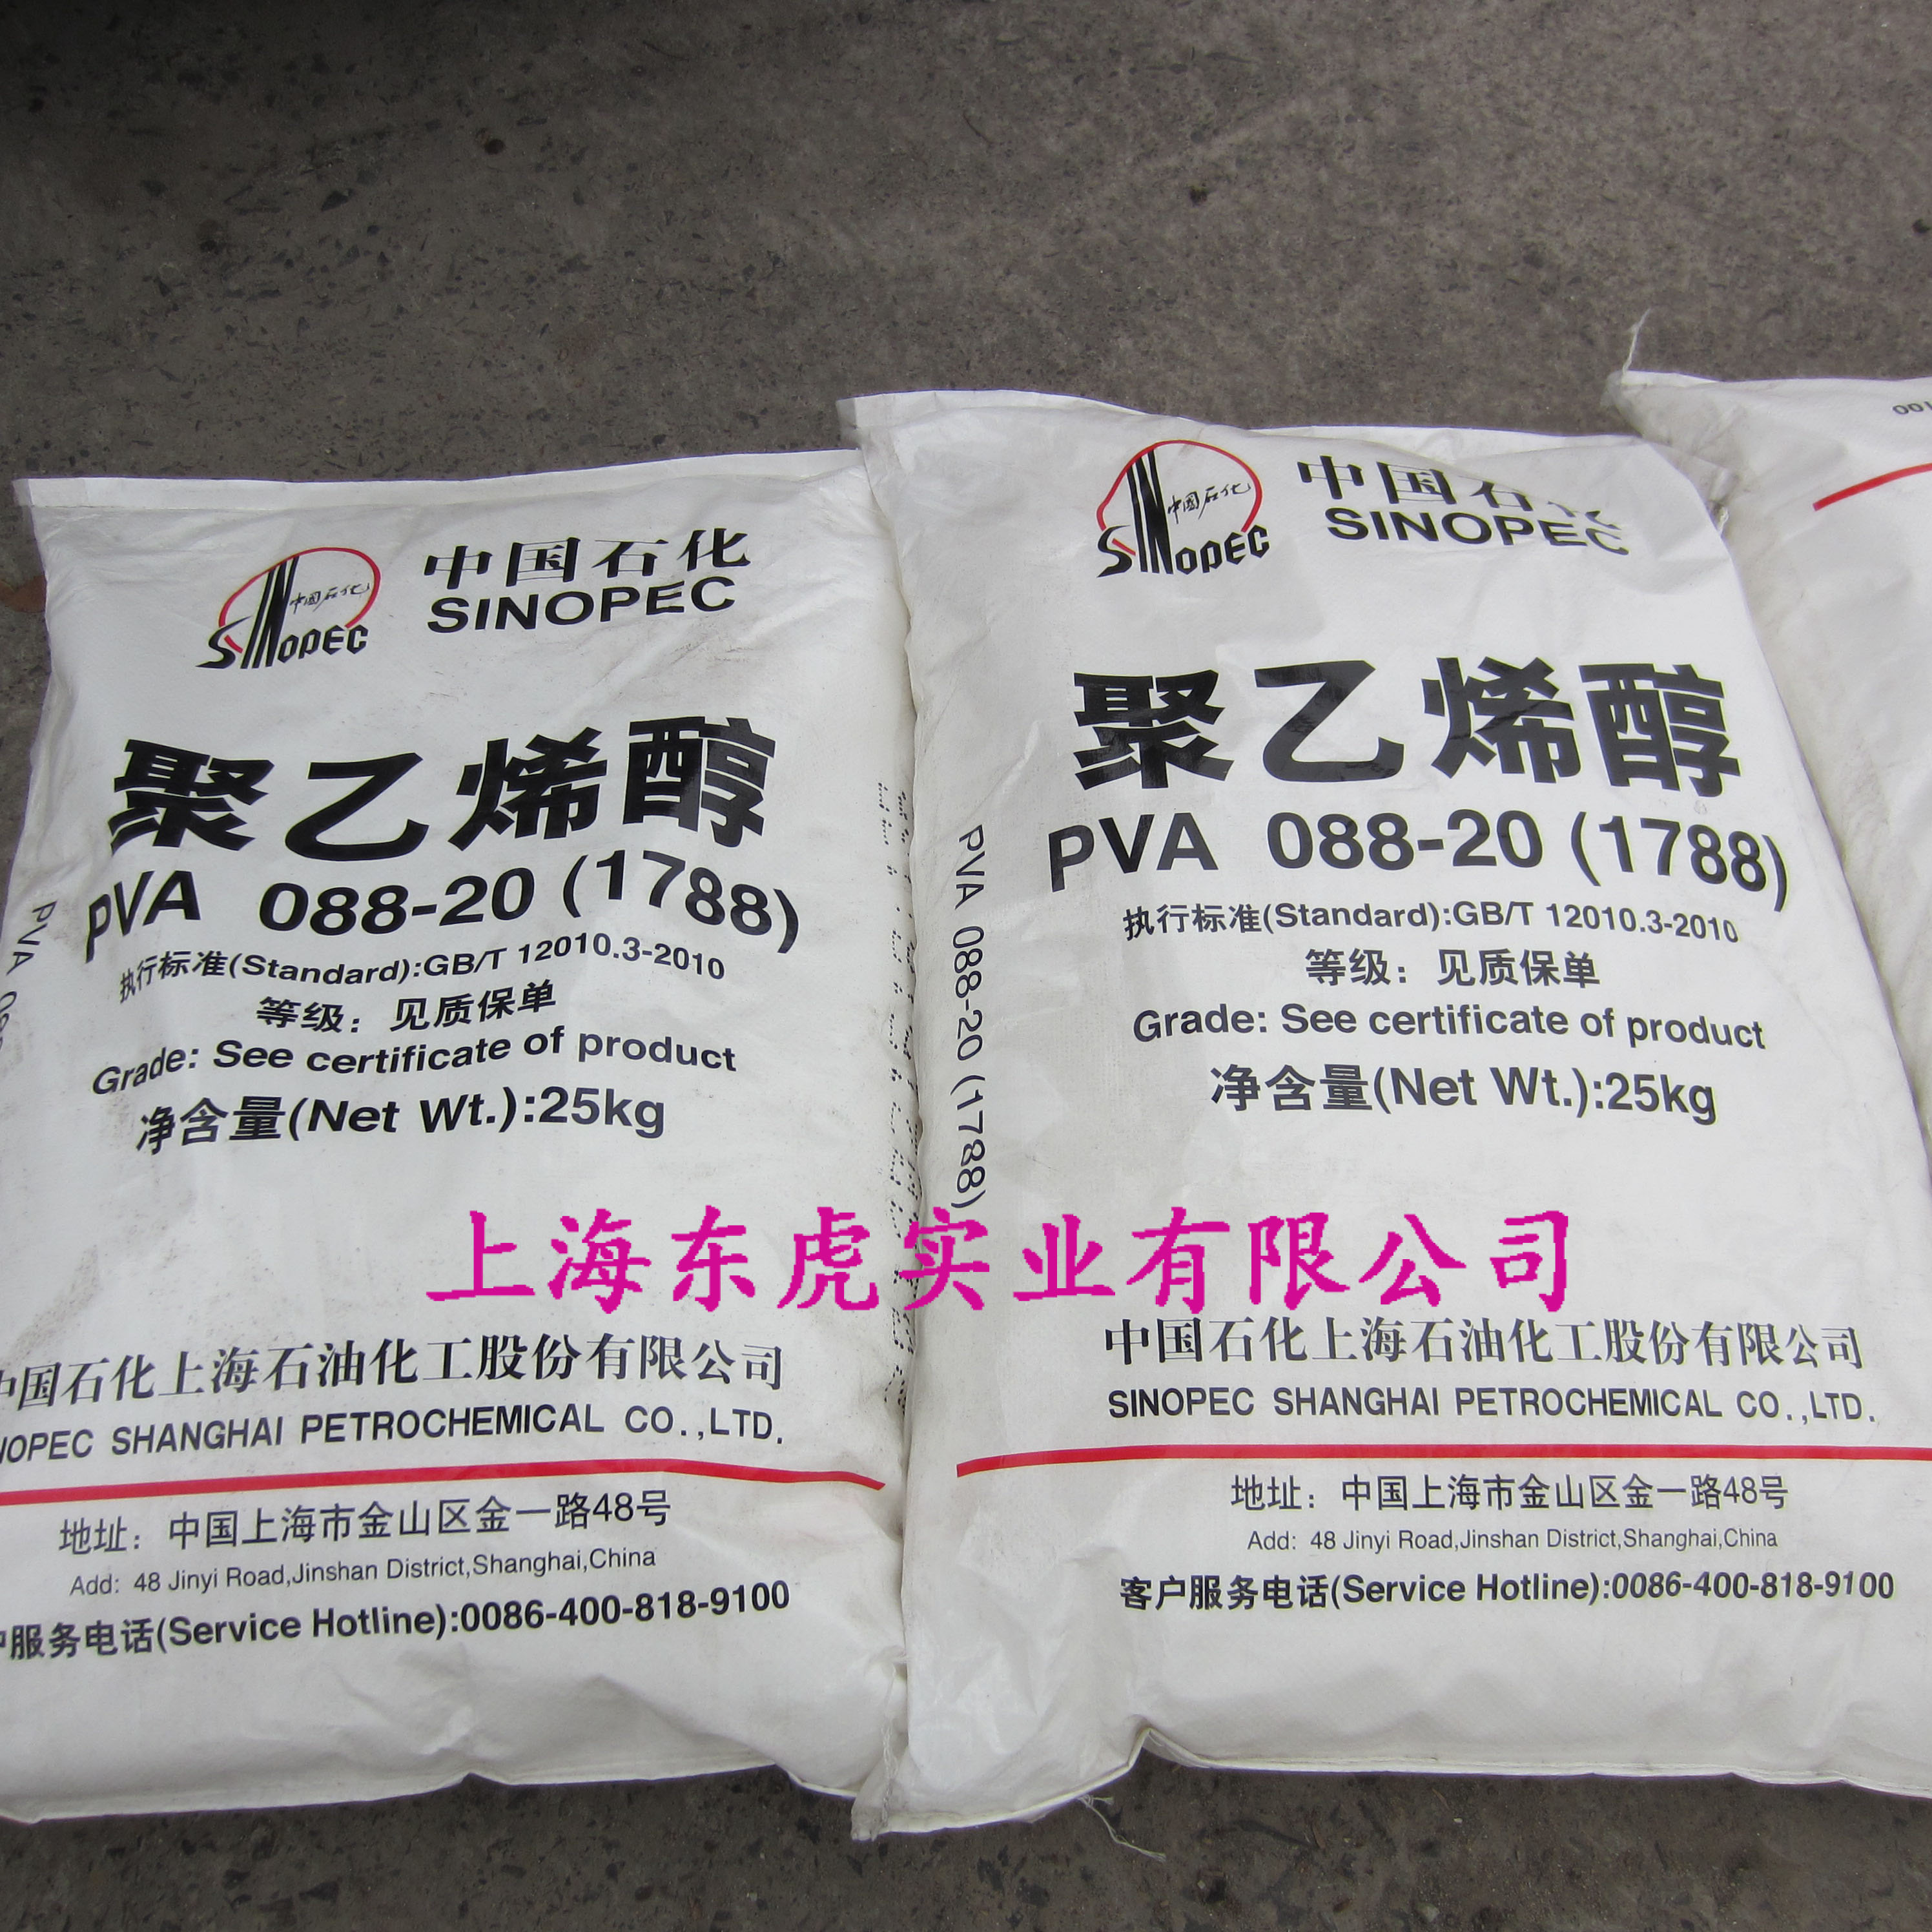 上海石化聚乙烯醇 PVA1788 颗粒信息